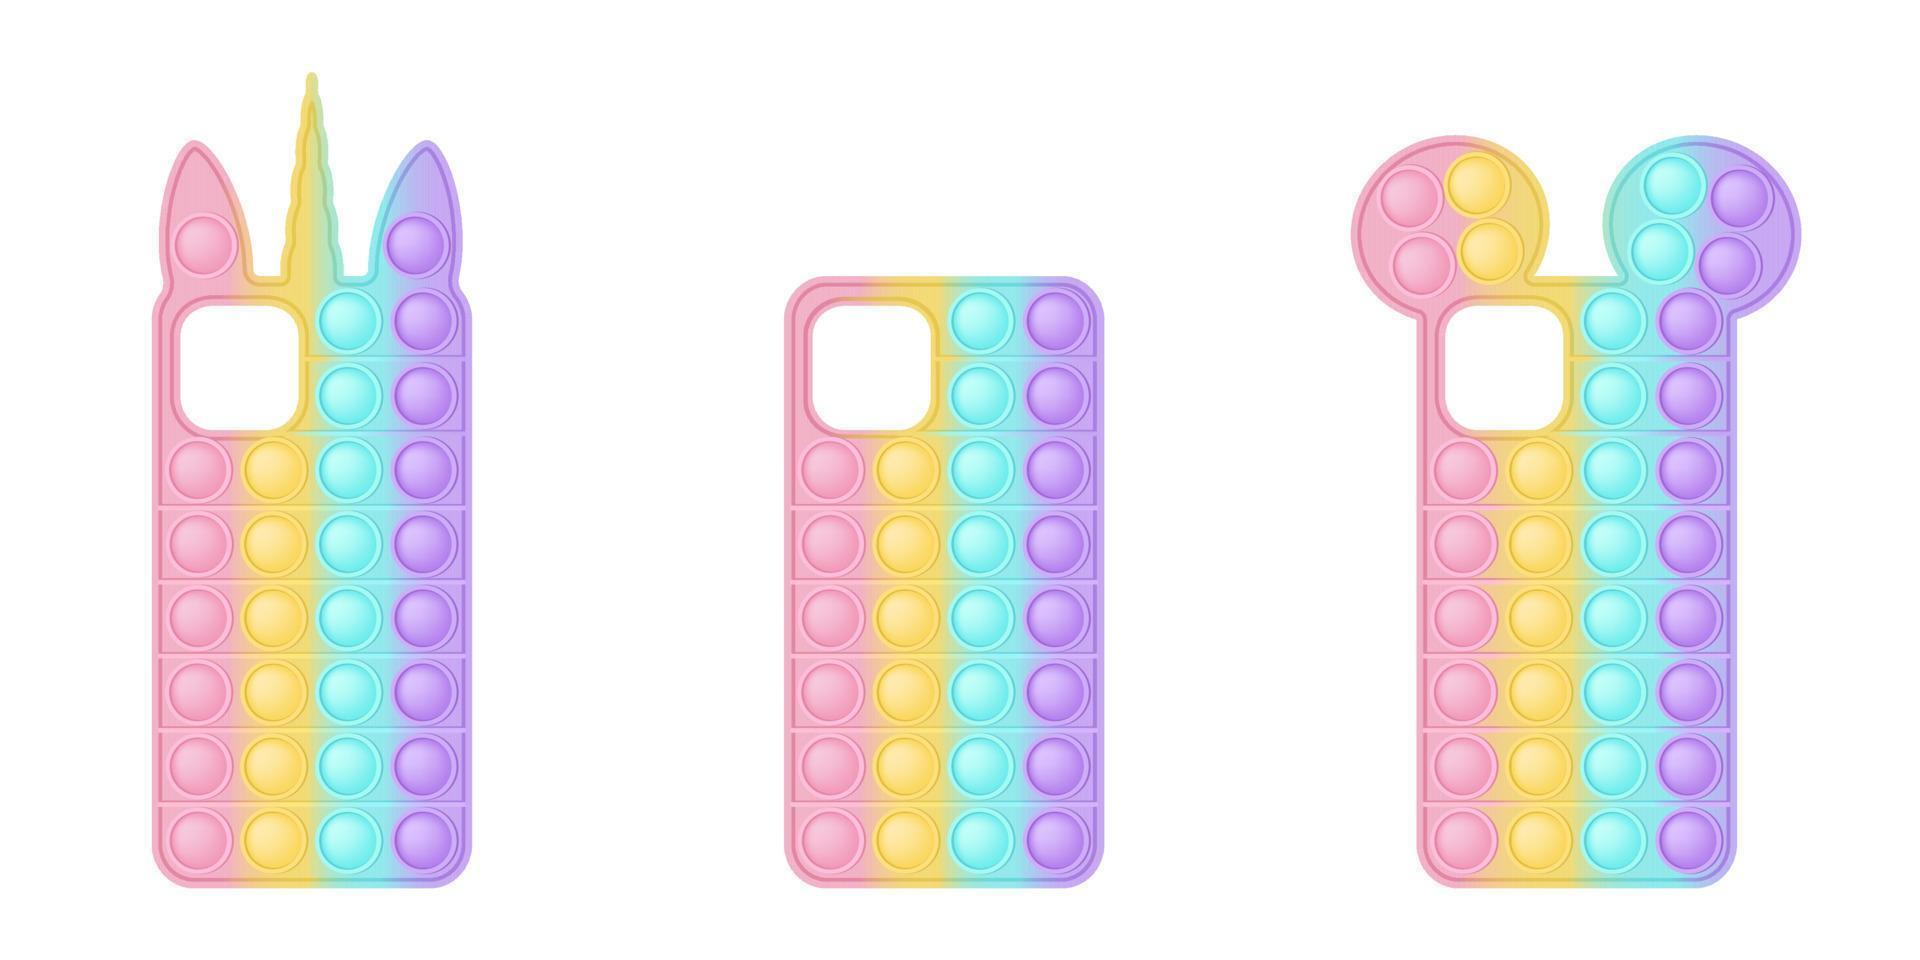 mobil telefon fall i de form popping leksak för fidgets. de omslag i pastell regnbåge färger med enhörning och öron och en enkel form. vektor illustration isolerat på en vit bakgrund.